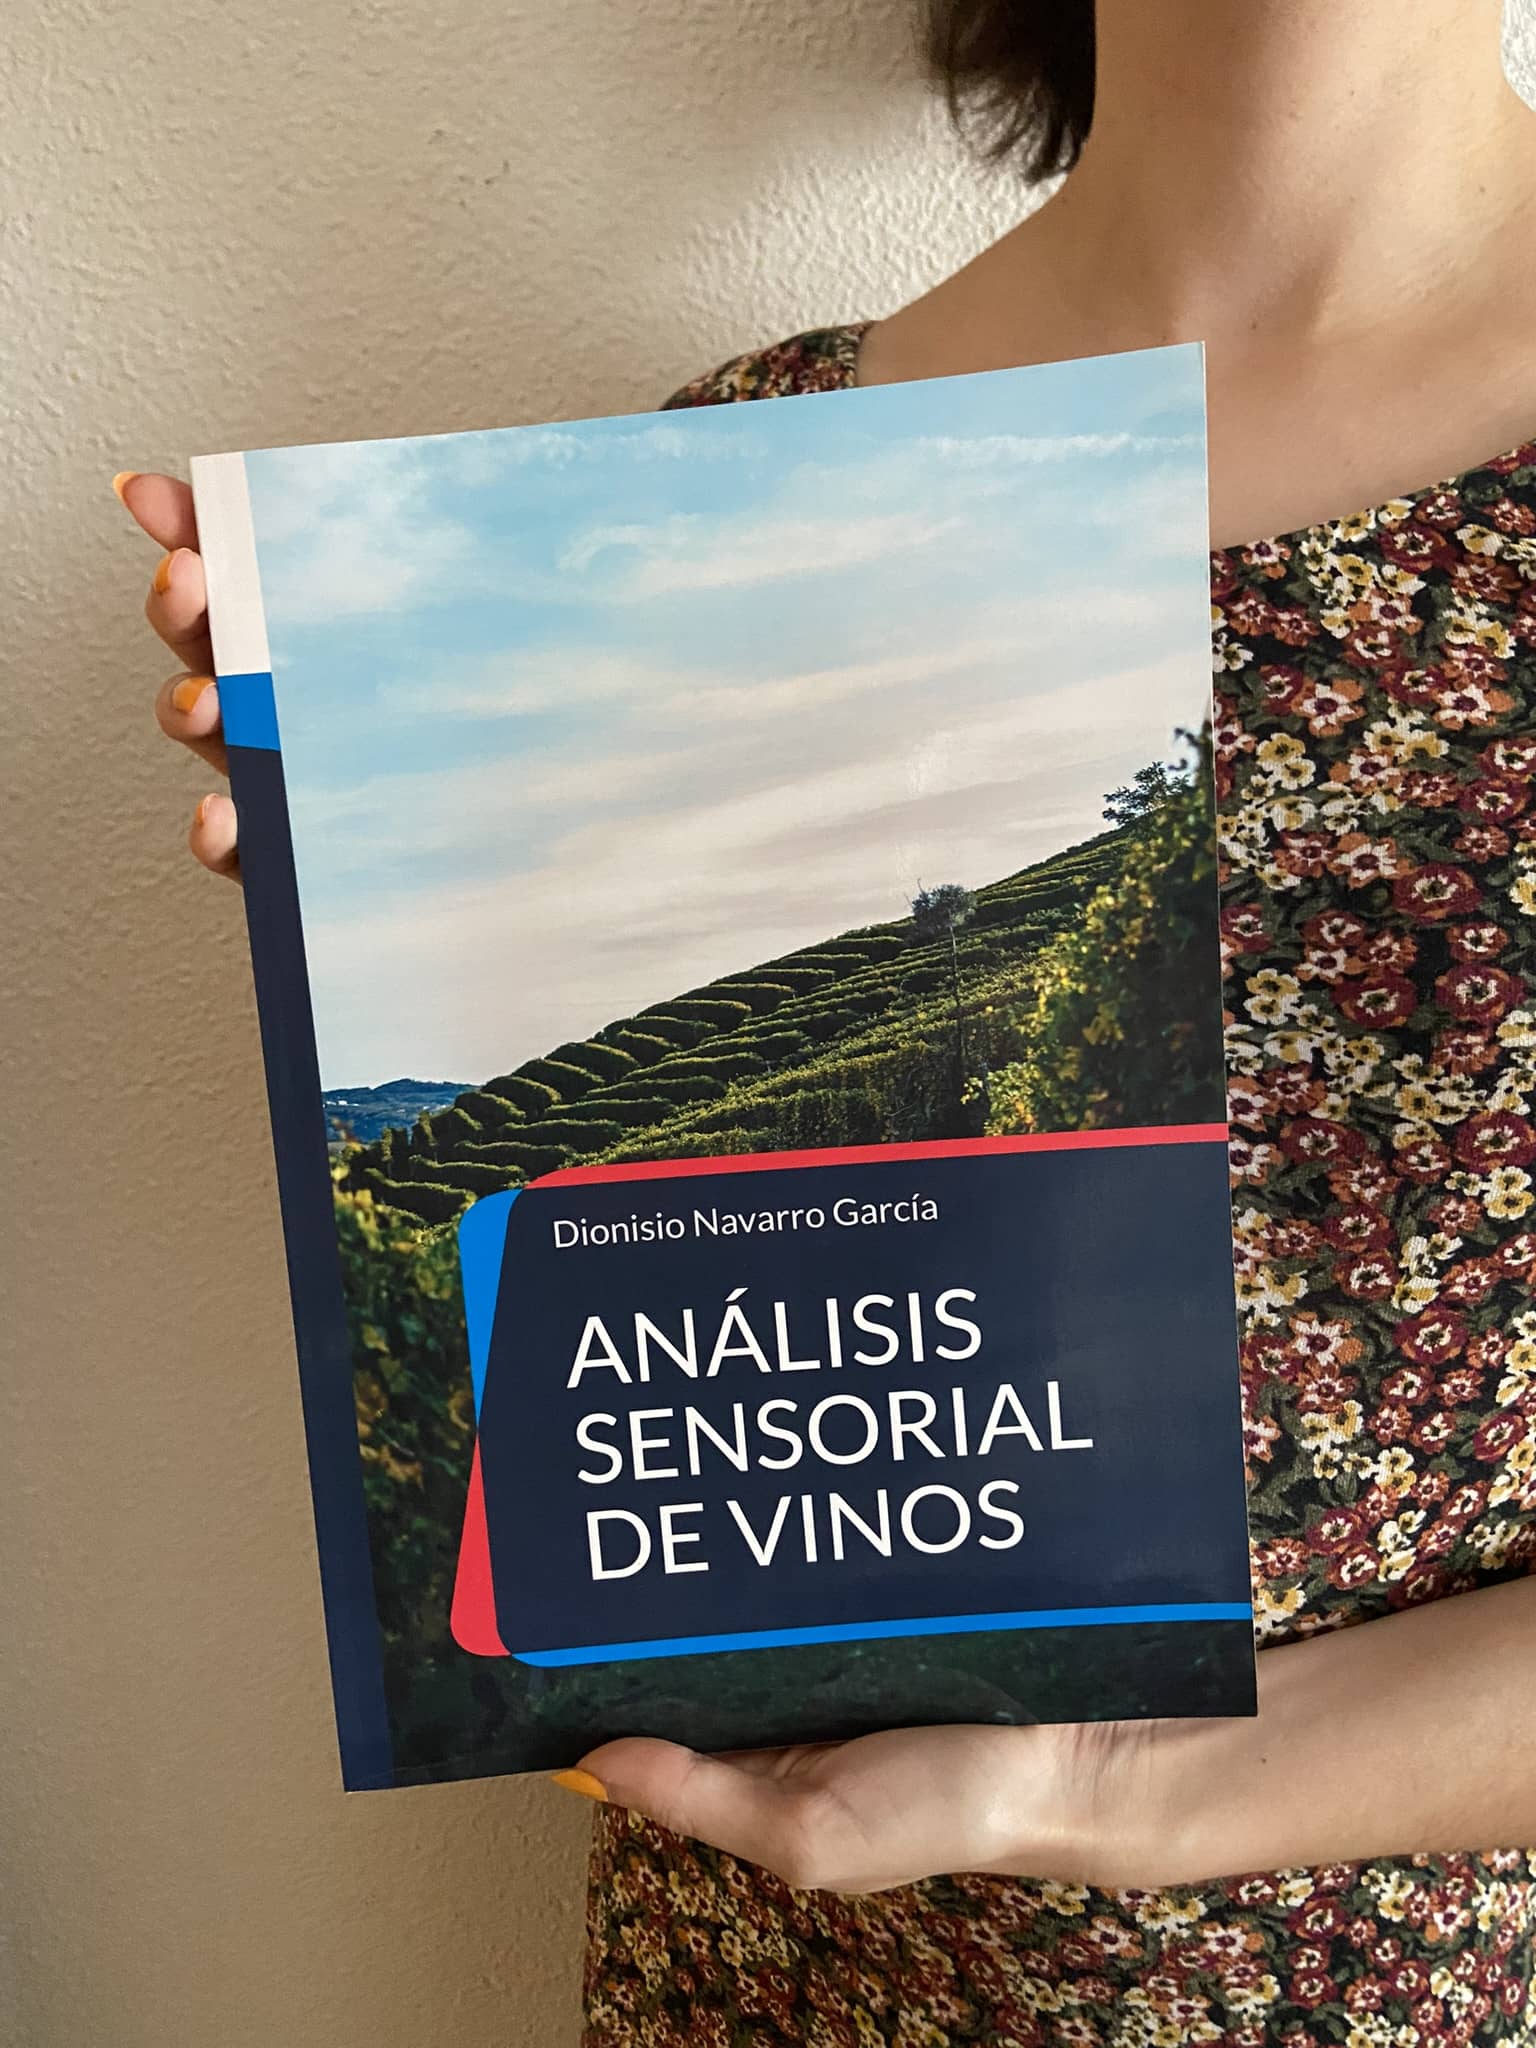 Reseña de “Análisis sensorial de vinos”, de Dionisio Navarro García | Por Nuria Bellido